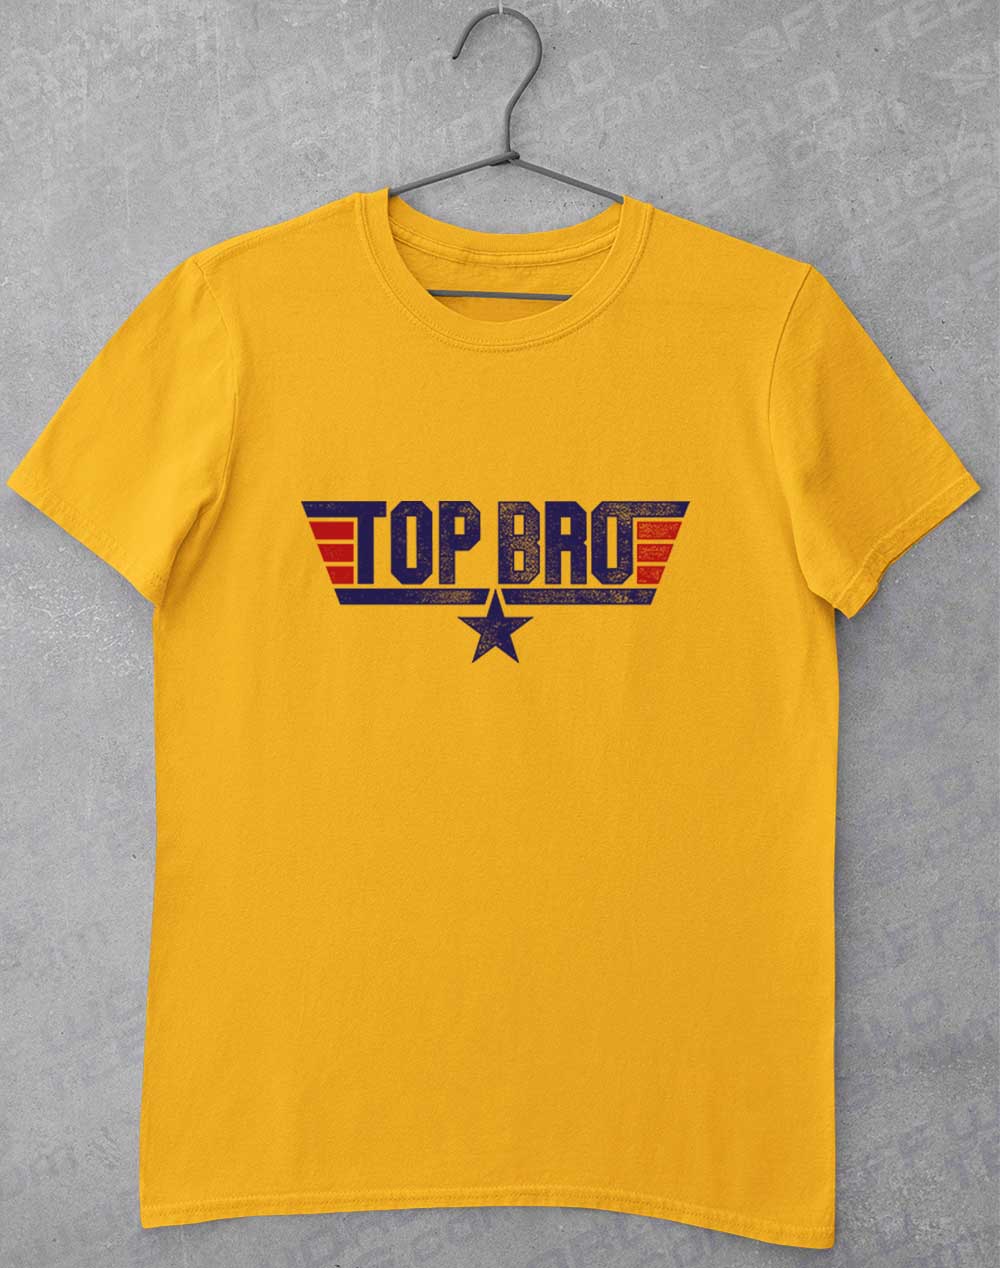 Gold - Top Bro T-Shirt